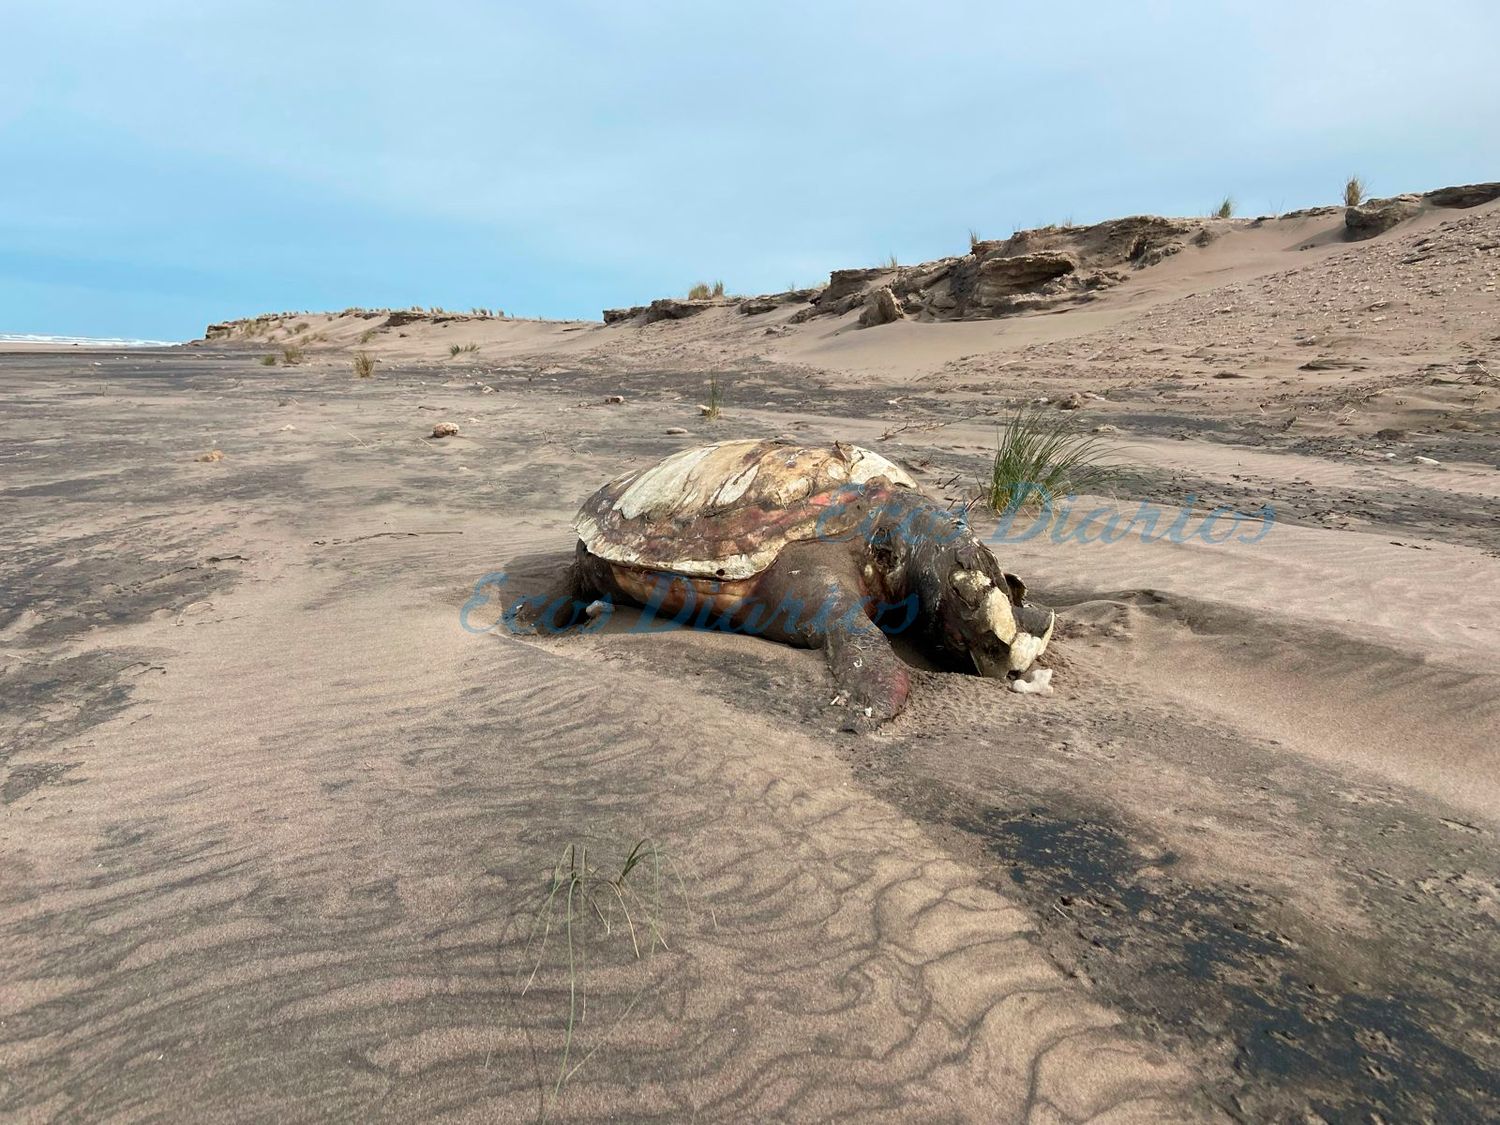 La tortuga, en avanzado estado de descomposición y de grandes dimensiones